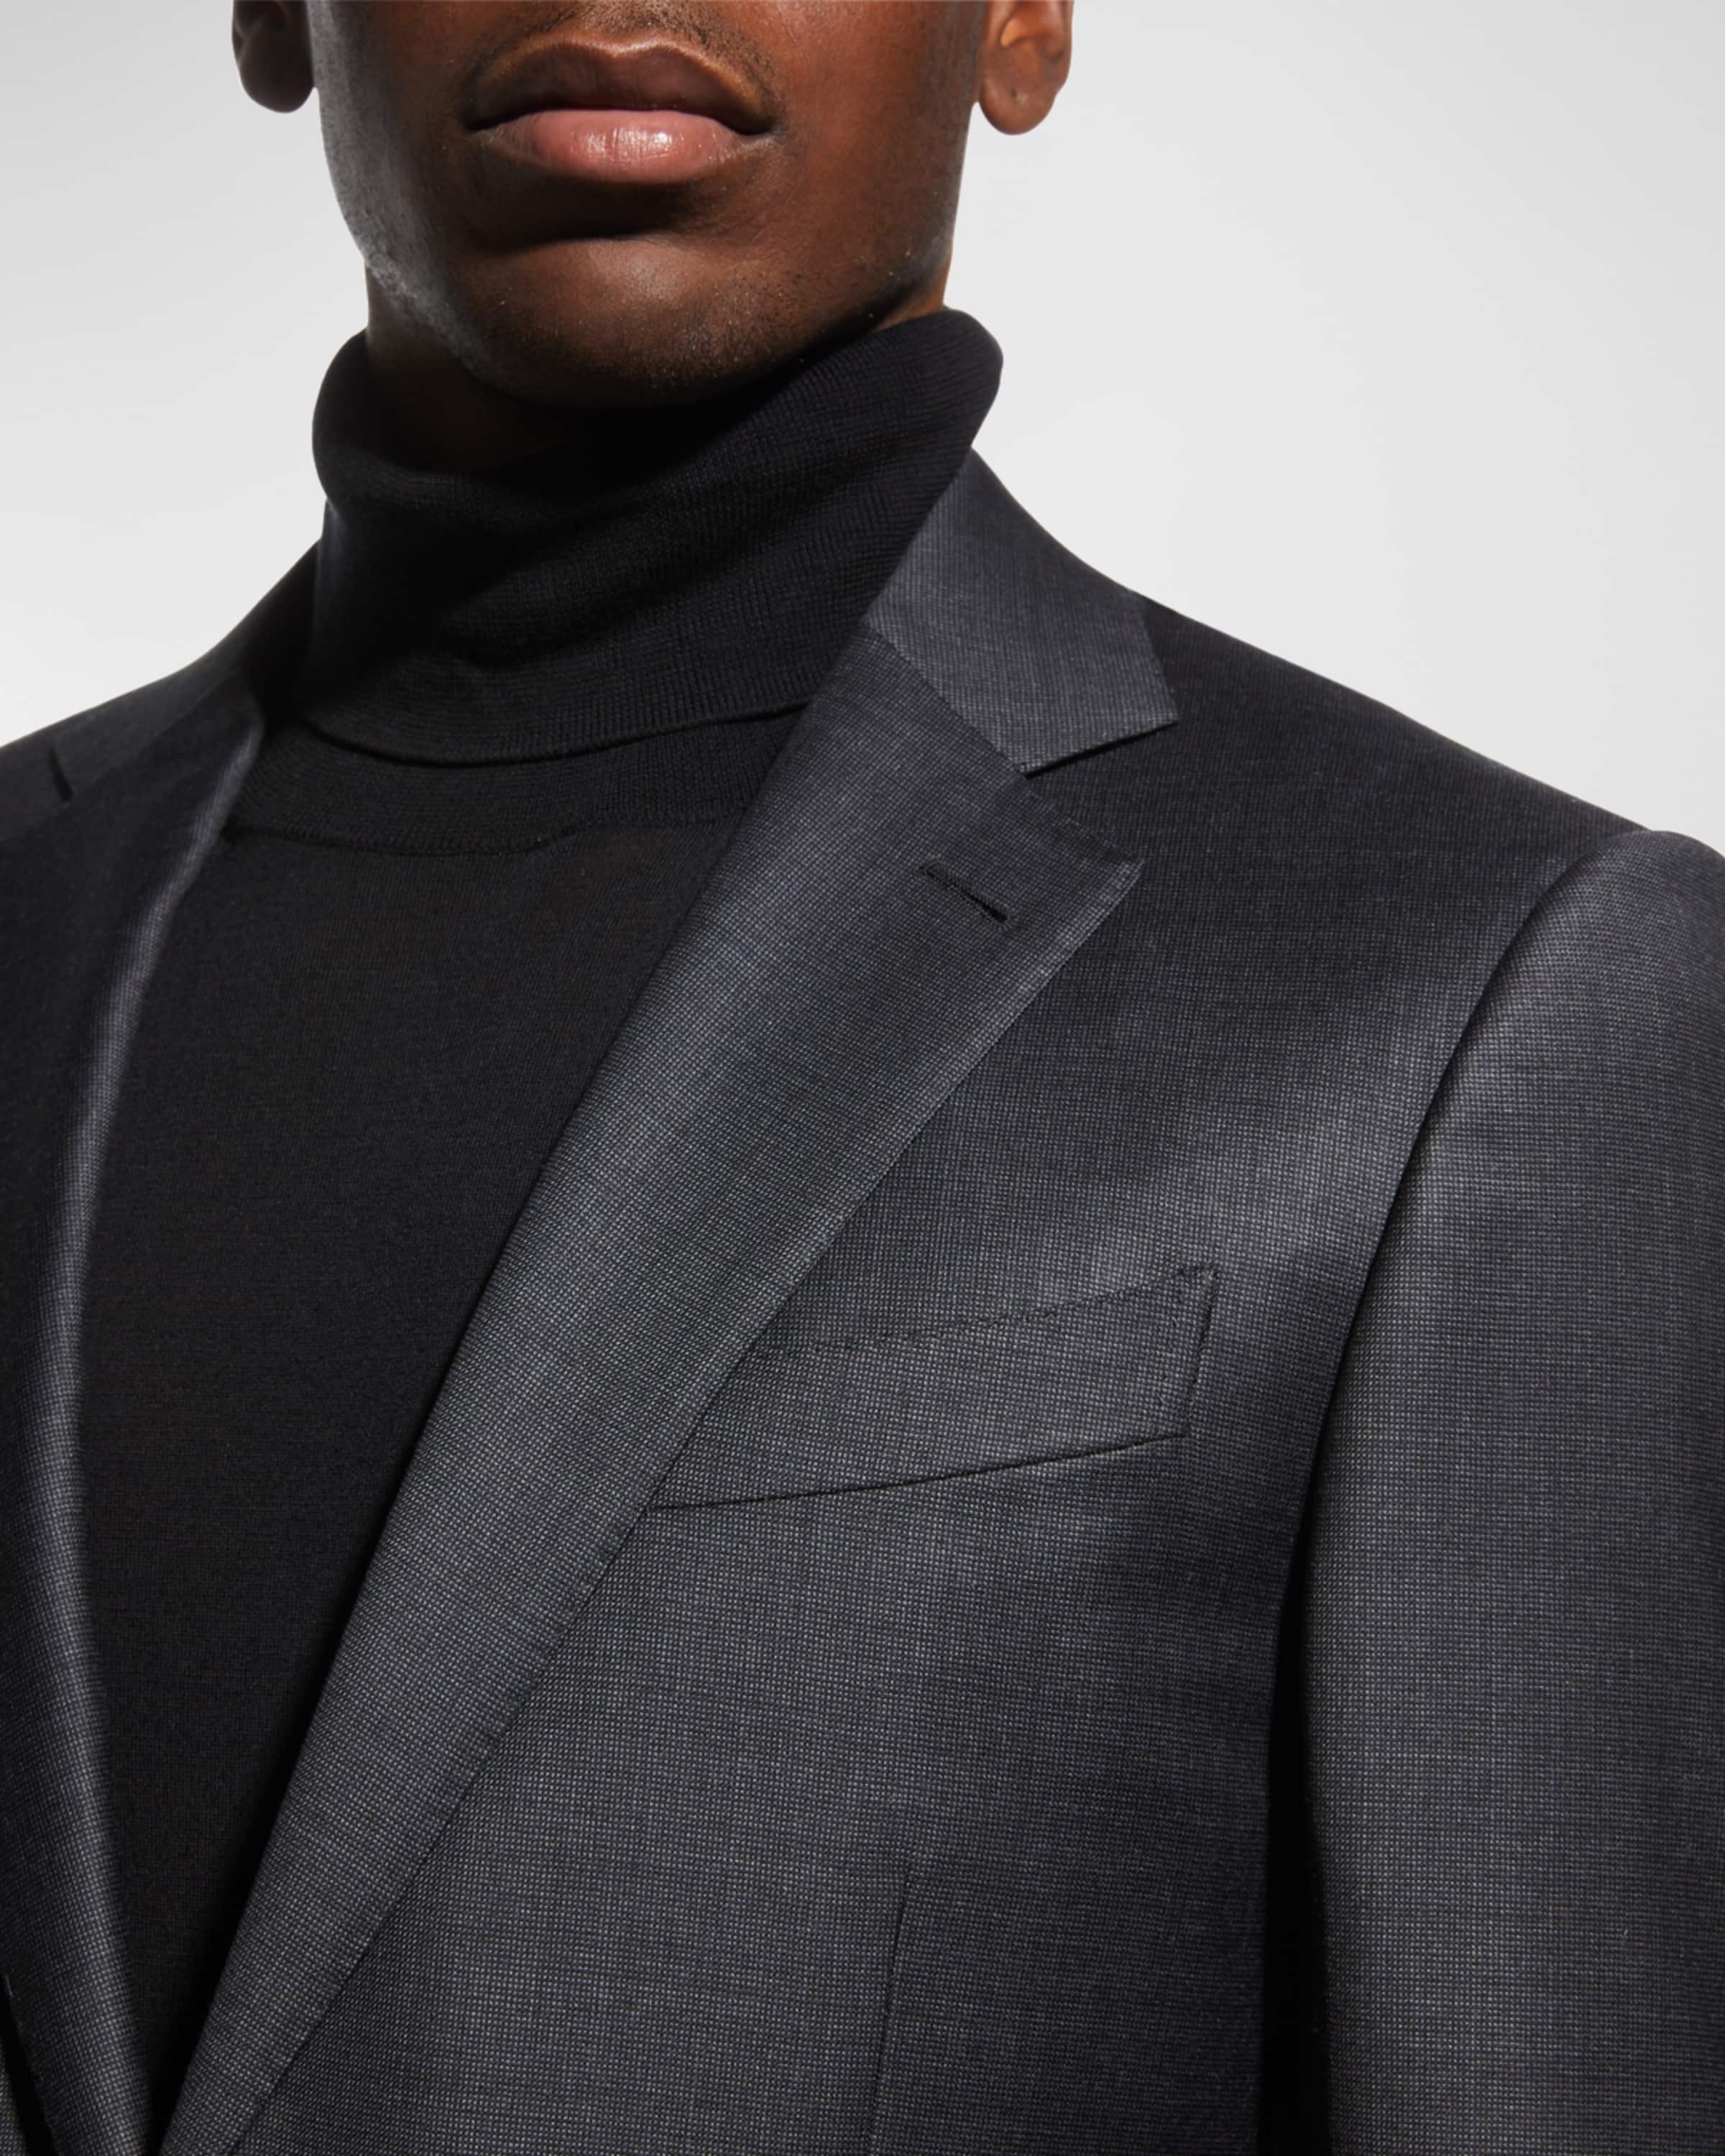 Men's Wool Tic-Weave Suit - 1